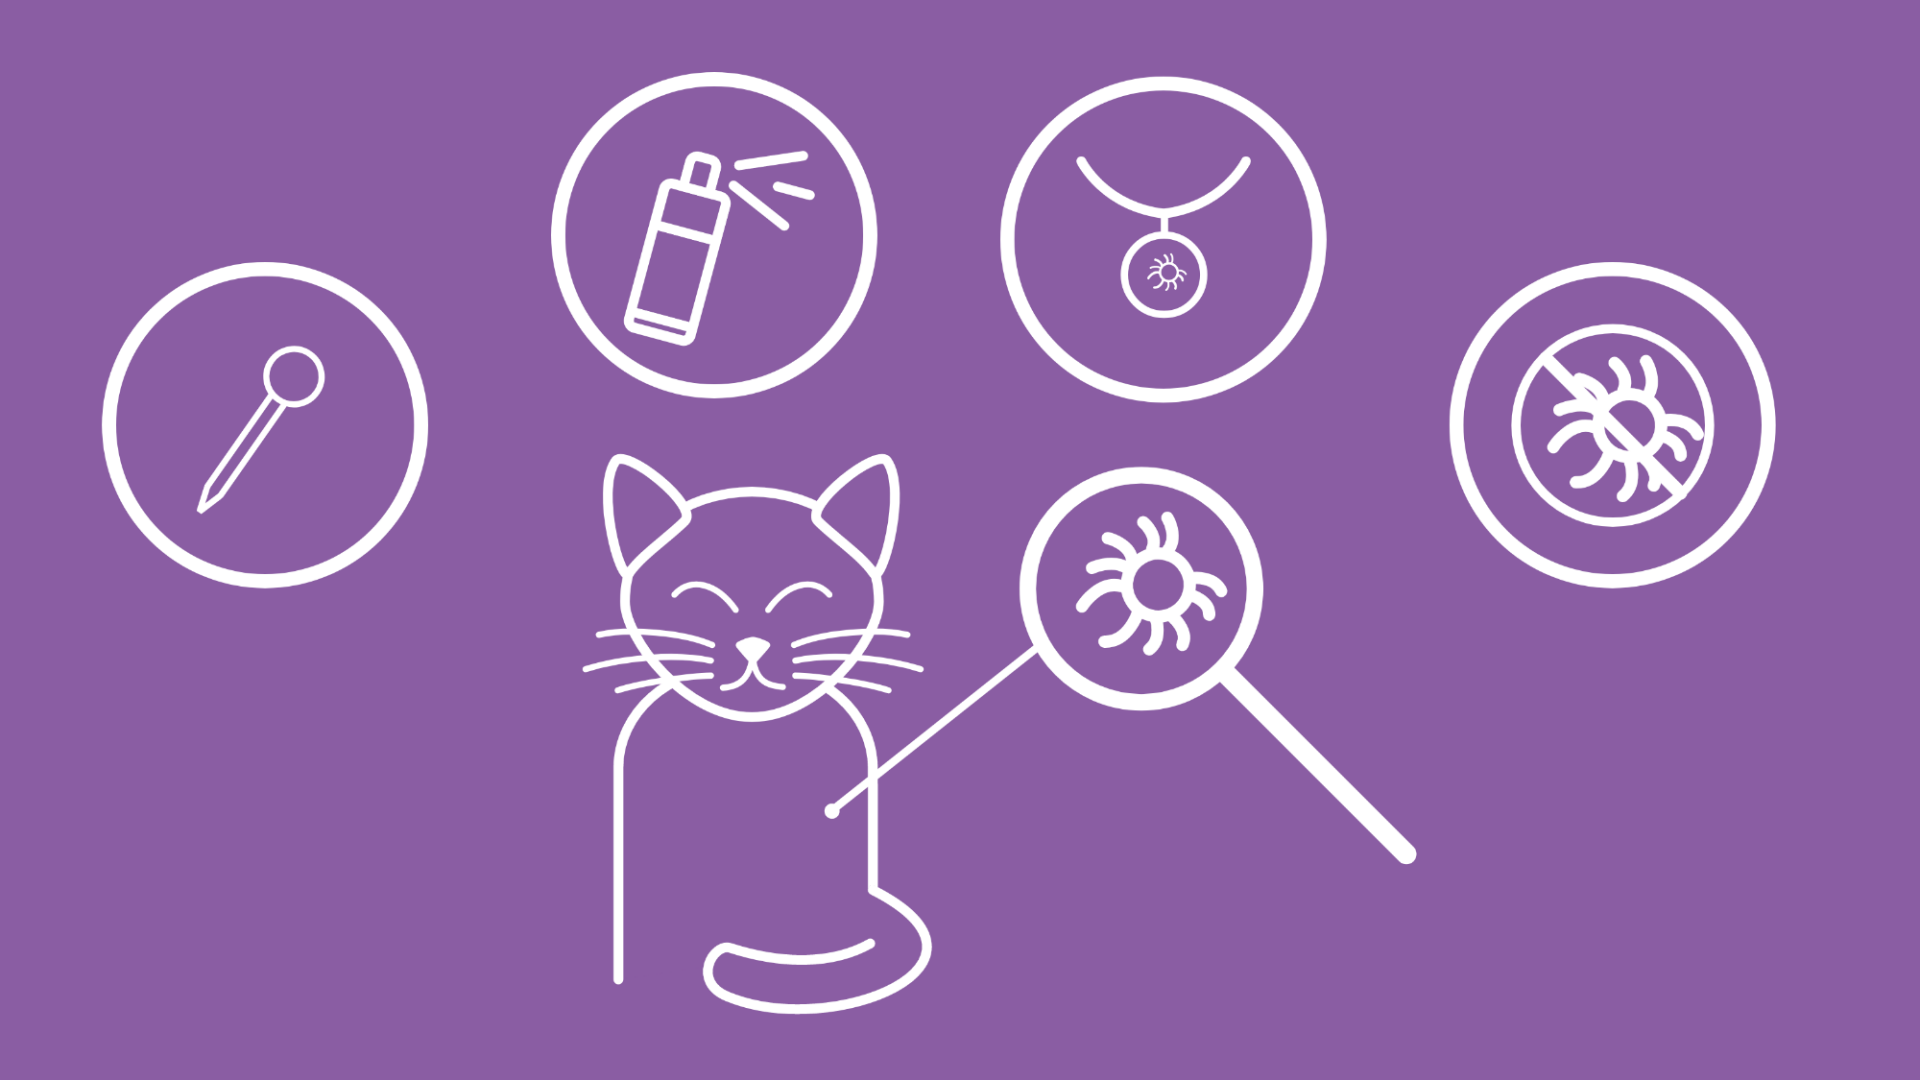 Auf dem Bild sind in Form von Icons die wichtigsten Mittel zur Vorbeugung von Zeckenbefall, um eine Katze herum, zu sehen: ein Spot-on Mittel mit Pipette, eine Spraydose und ein Katzenhalsband. Außerdem ist ein Symbol mit einer durchgestrichenen Zecke zu sehen, um den Schutz für die Katze darzustellen.  